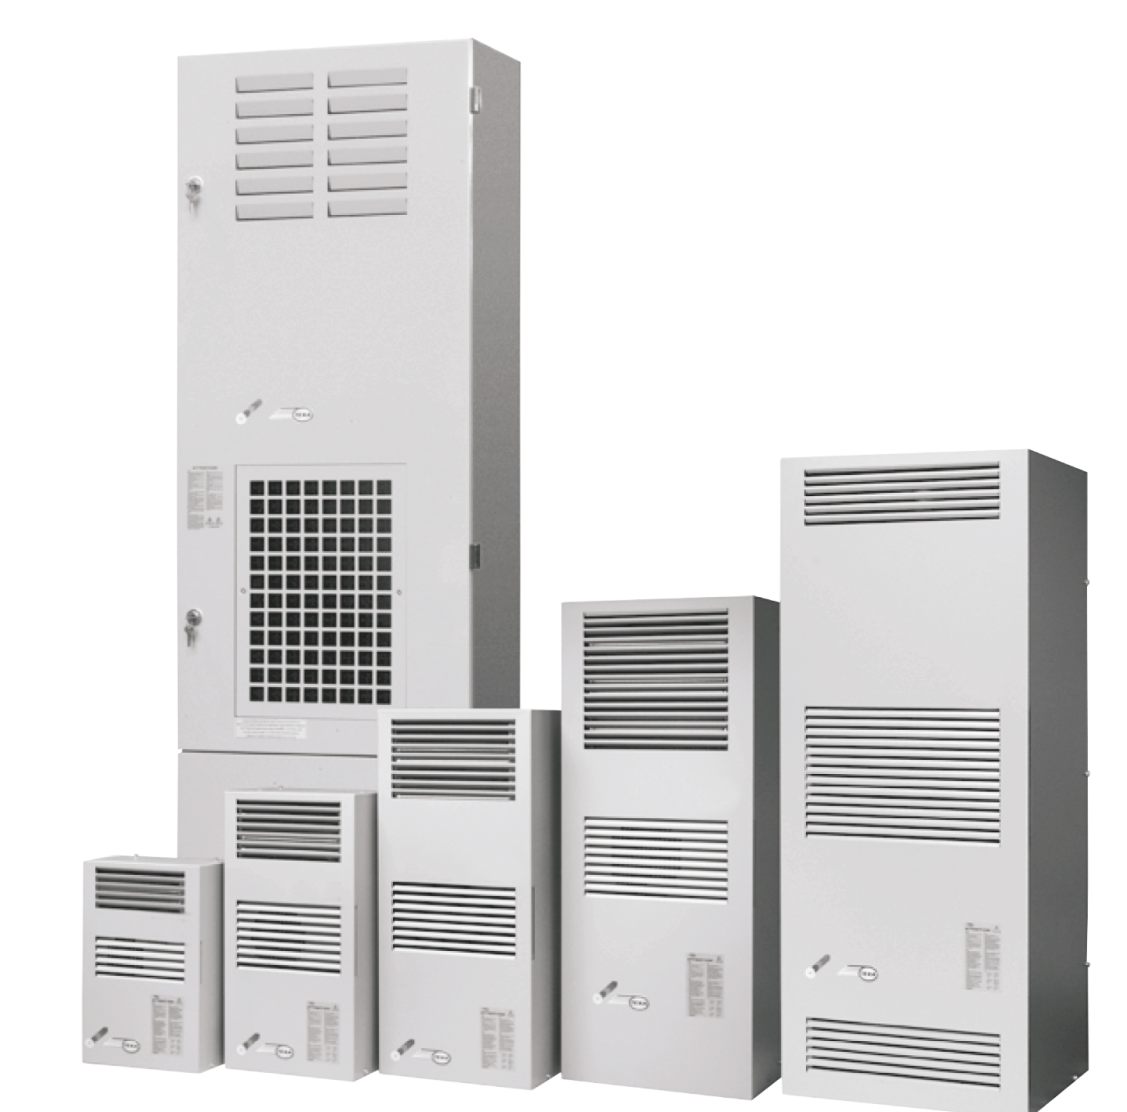 Air conditioner EGO10 (230V, 50-60Hz, 1050W)